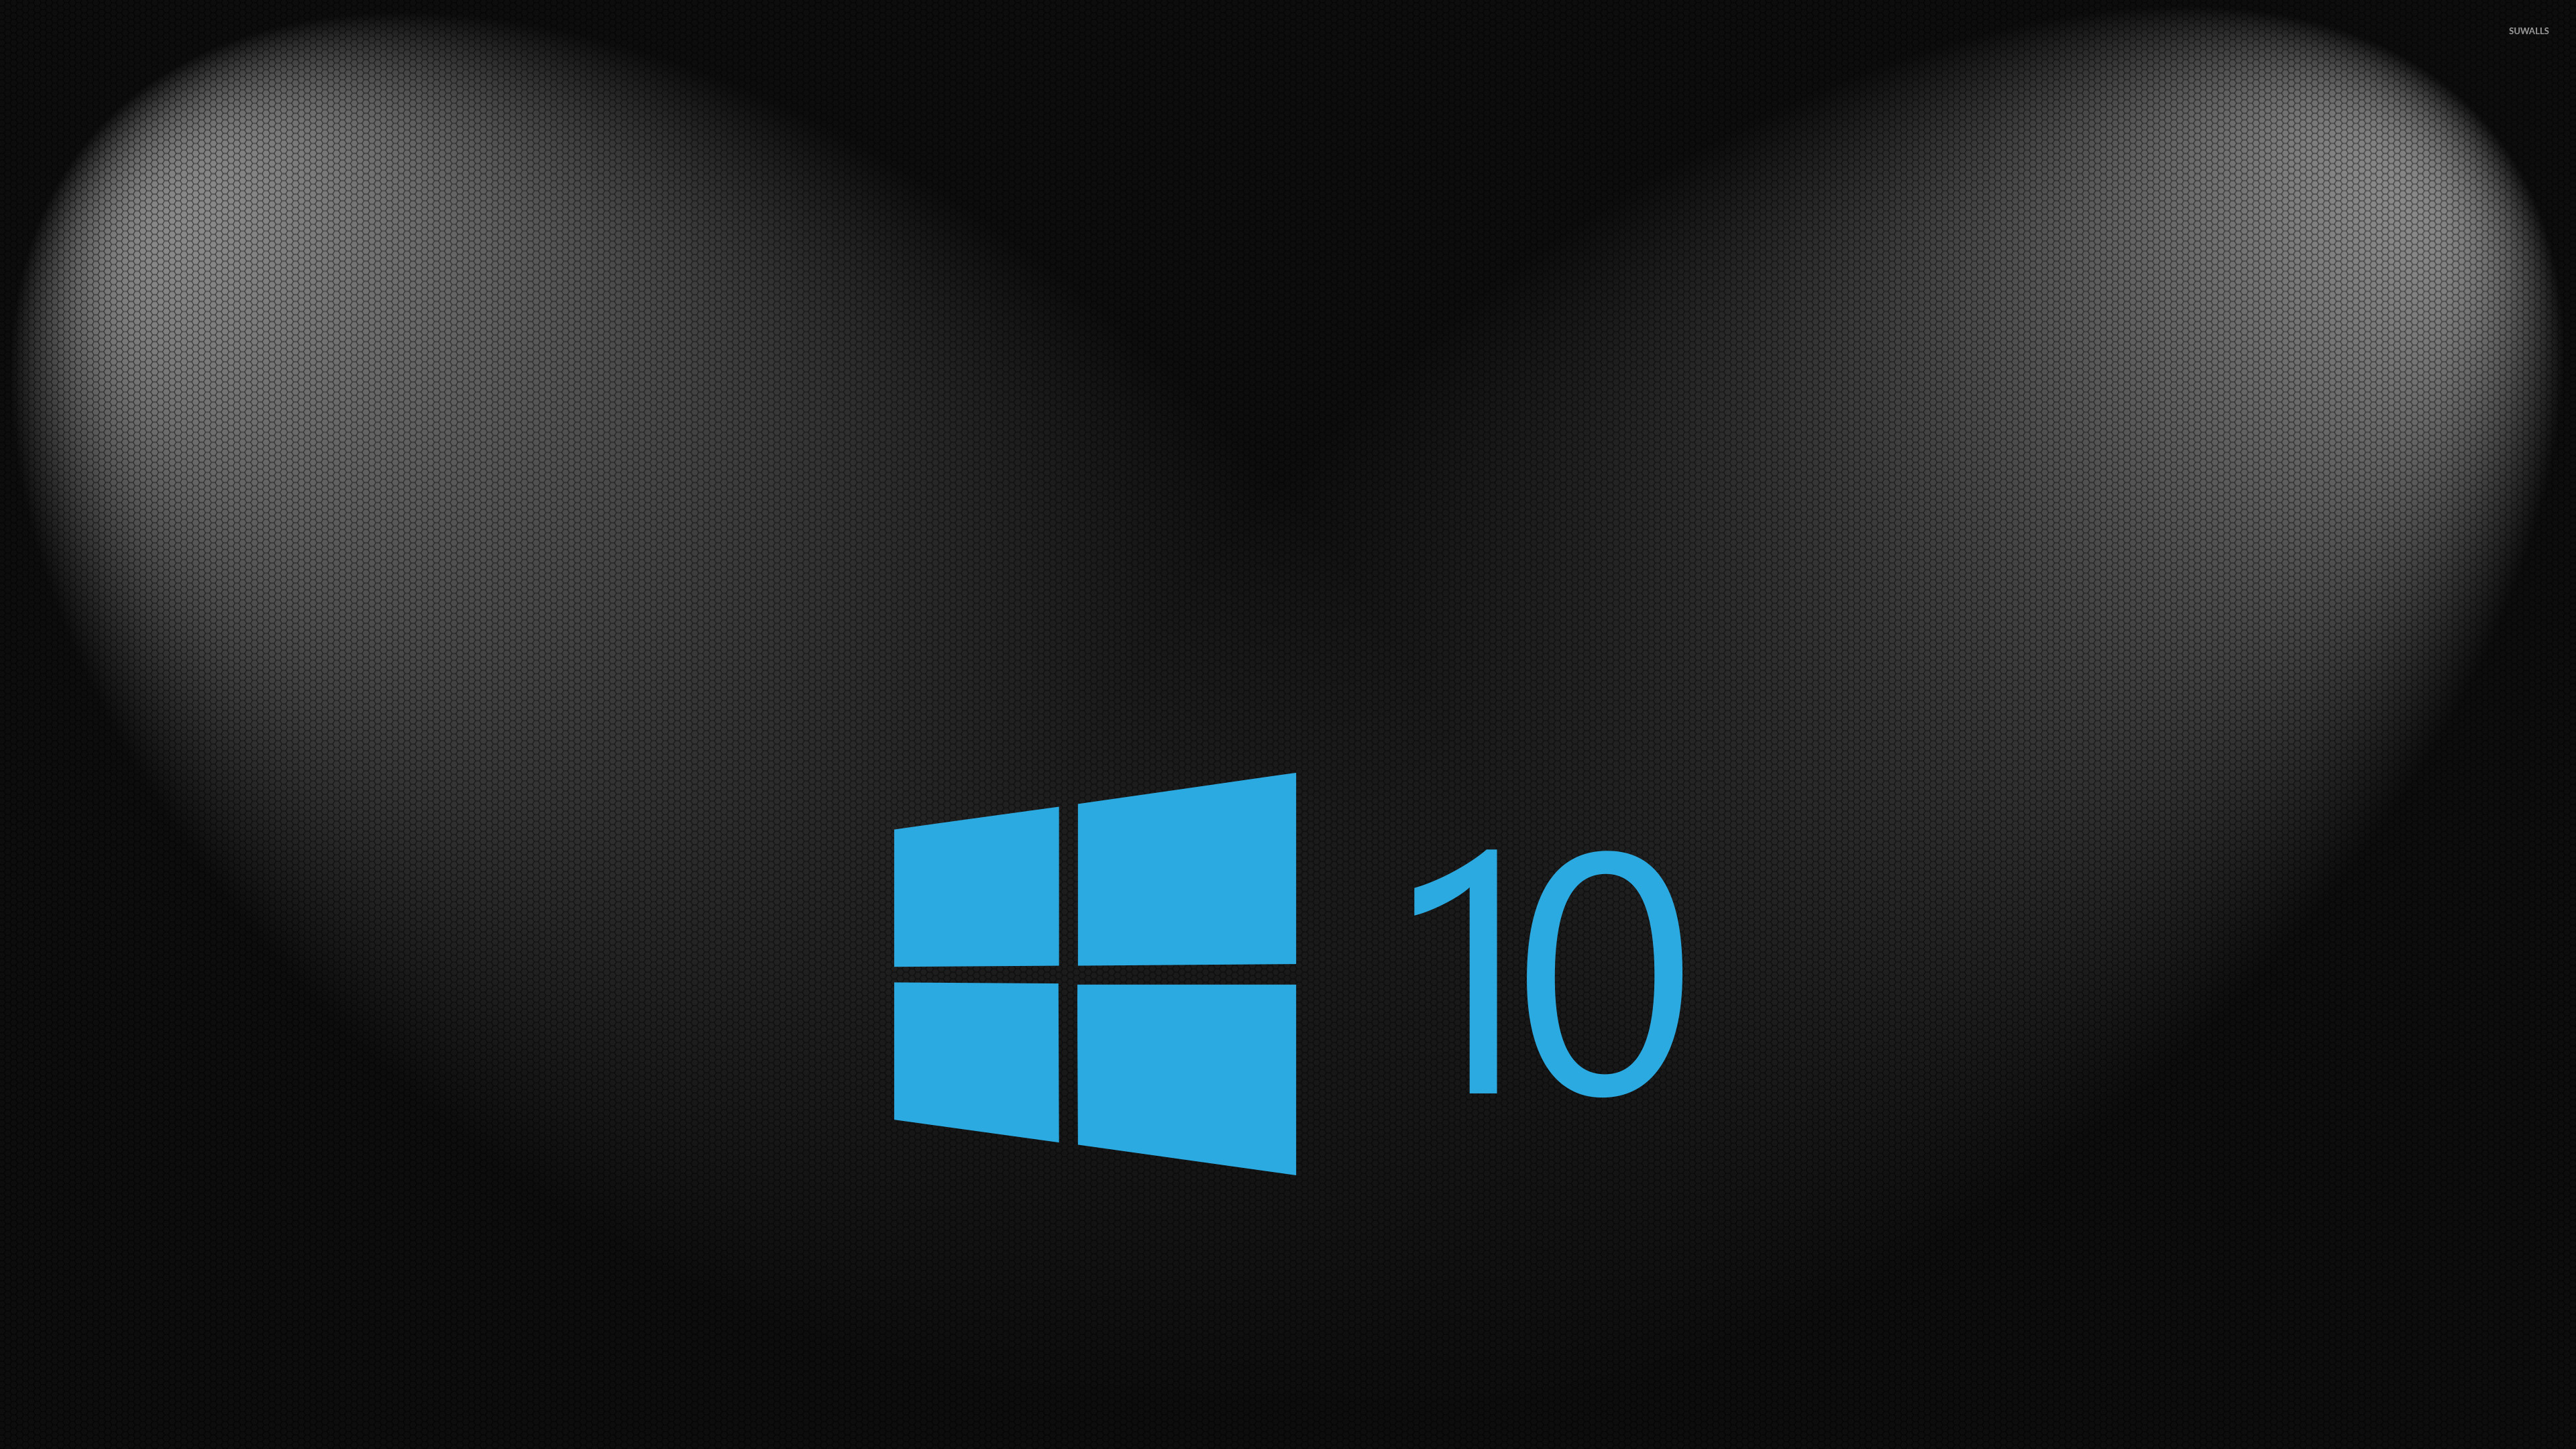 Обои на 10 4. Фон виндовс 10. Фоновое изображение Windows 10. Обои на рабочий стол Windows 10. Темная тема для рабочего стола Windows 10.